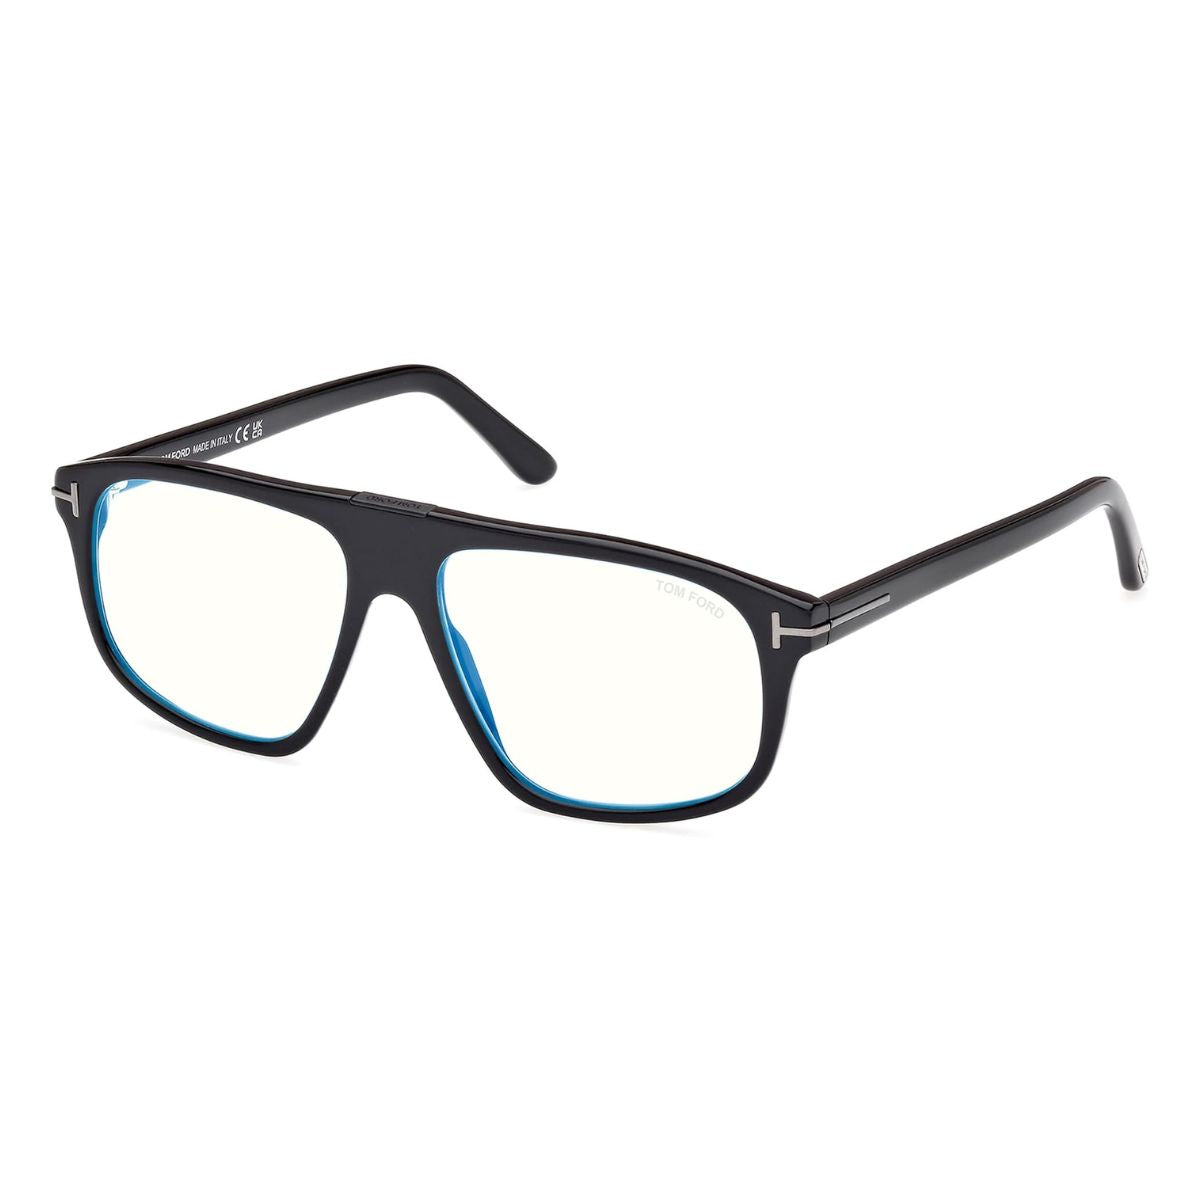 "Trendy Tom Ford Eyeglasses For Men's At Optorium"